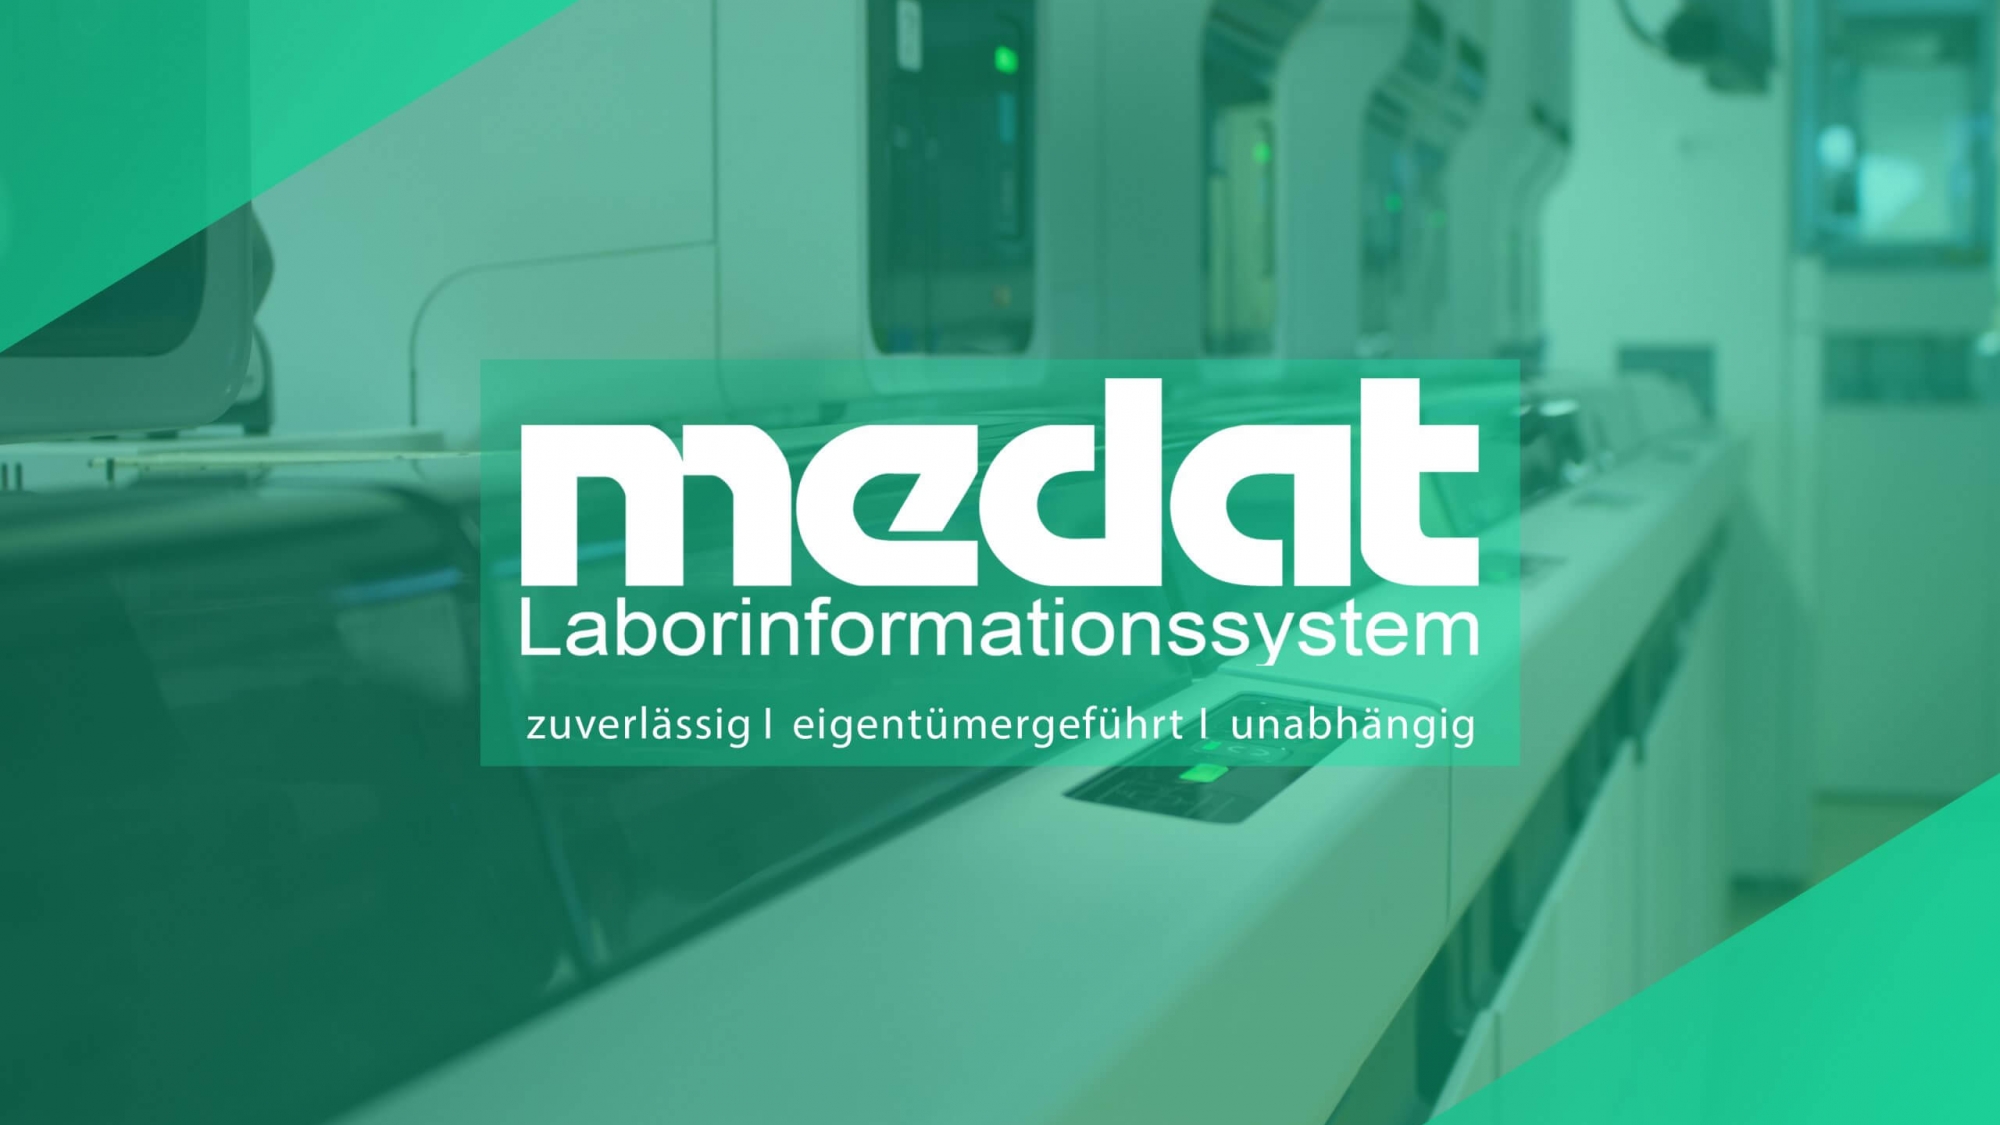 Das vollautomatisierte Labor von Medat Laborinformationssystem